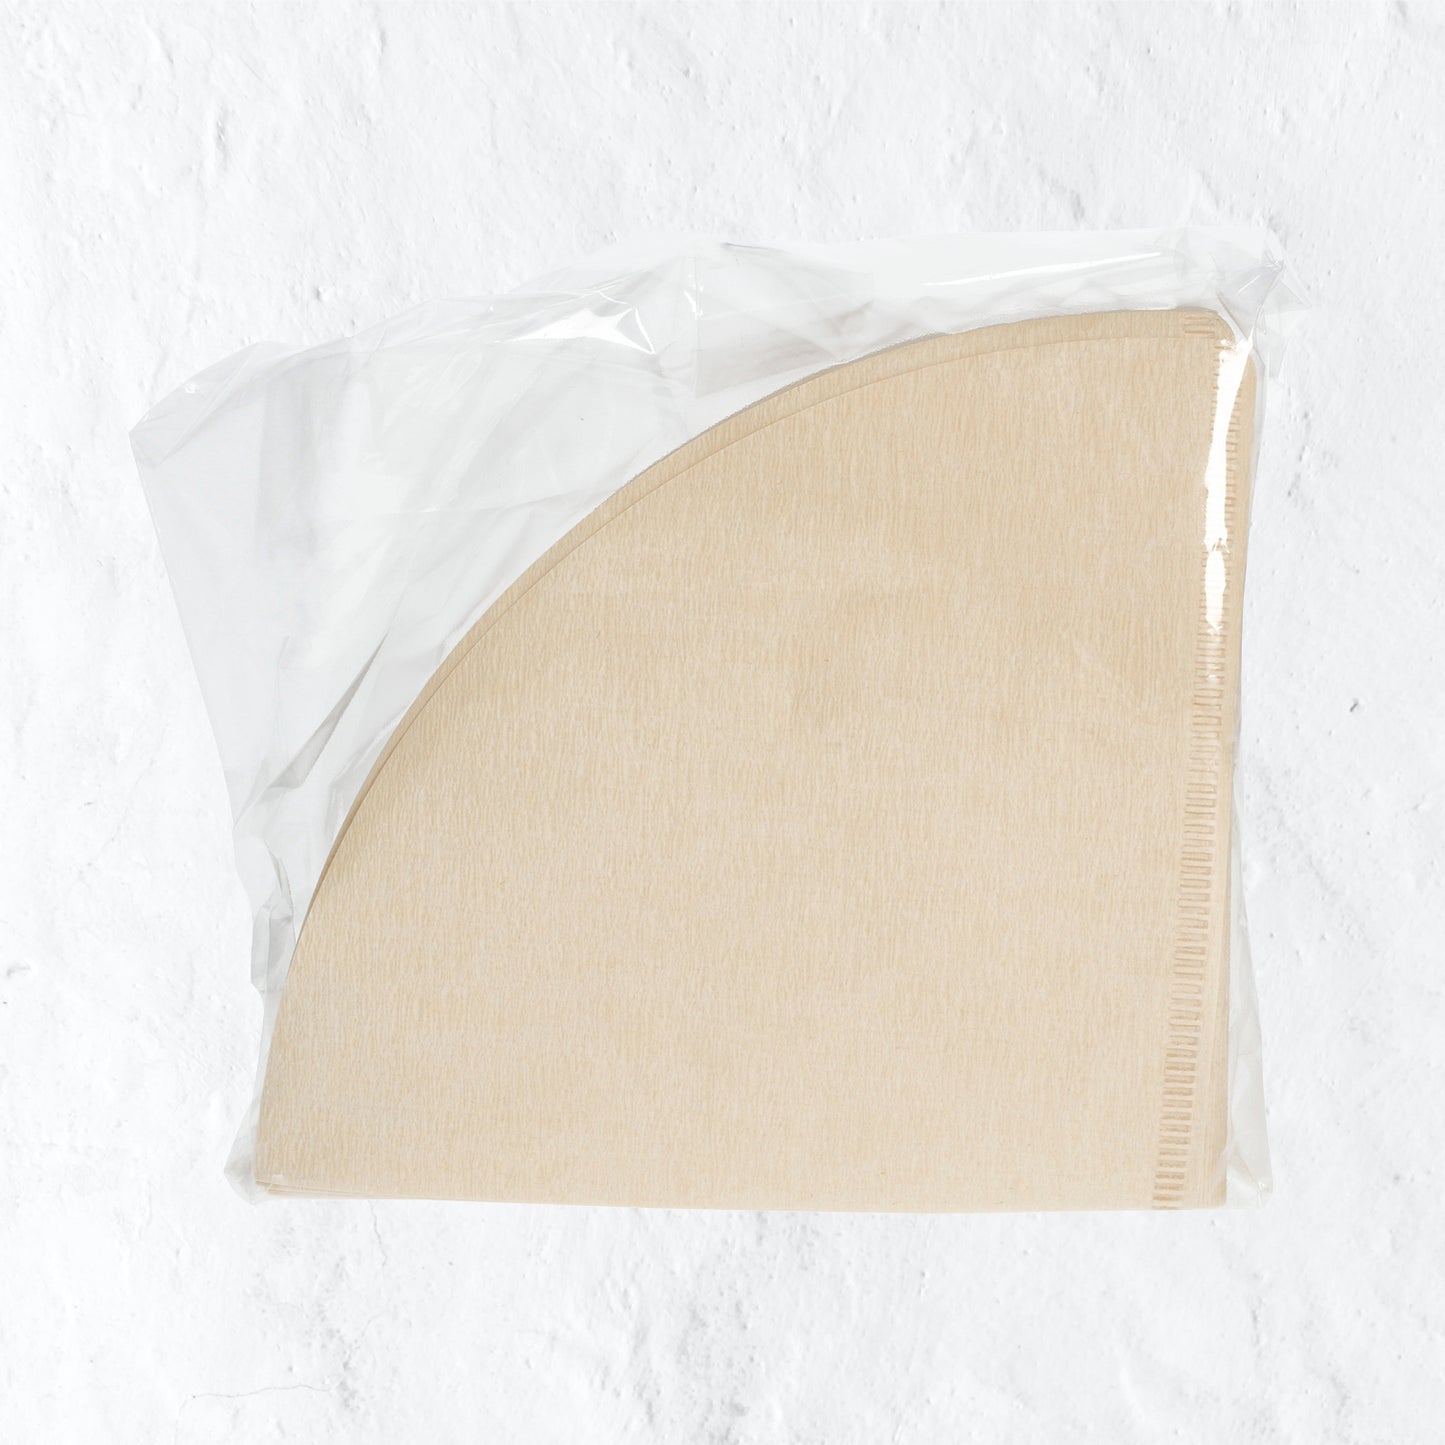 Hario Misarashi barna papír filter - V60-02/100